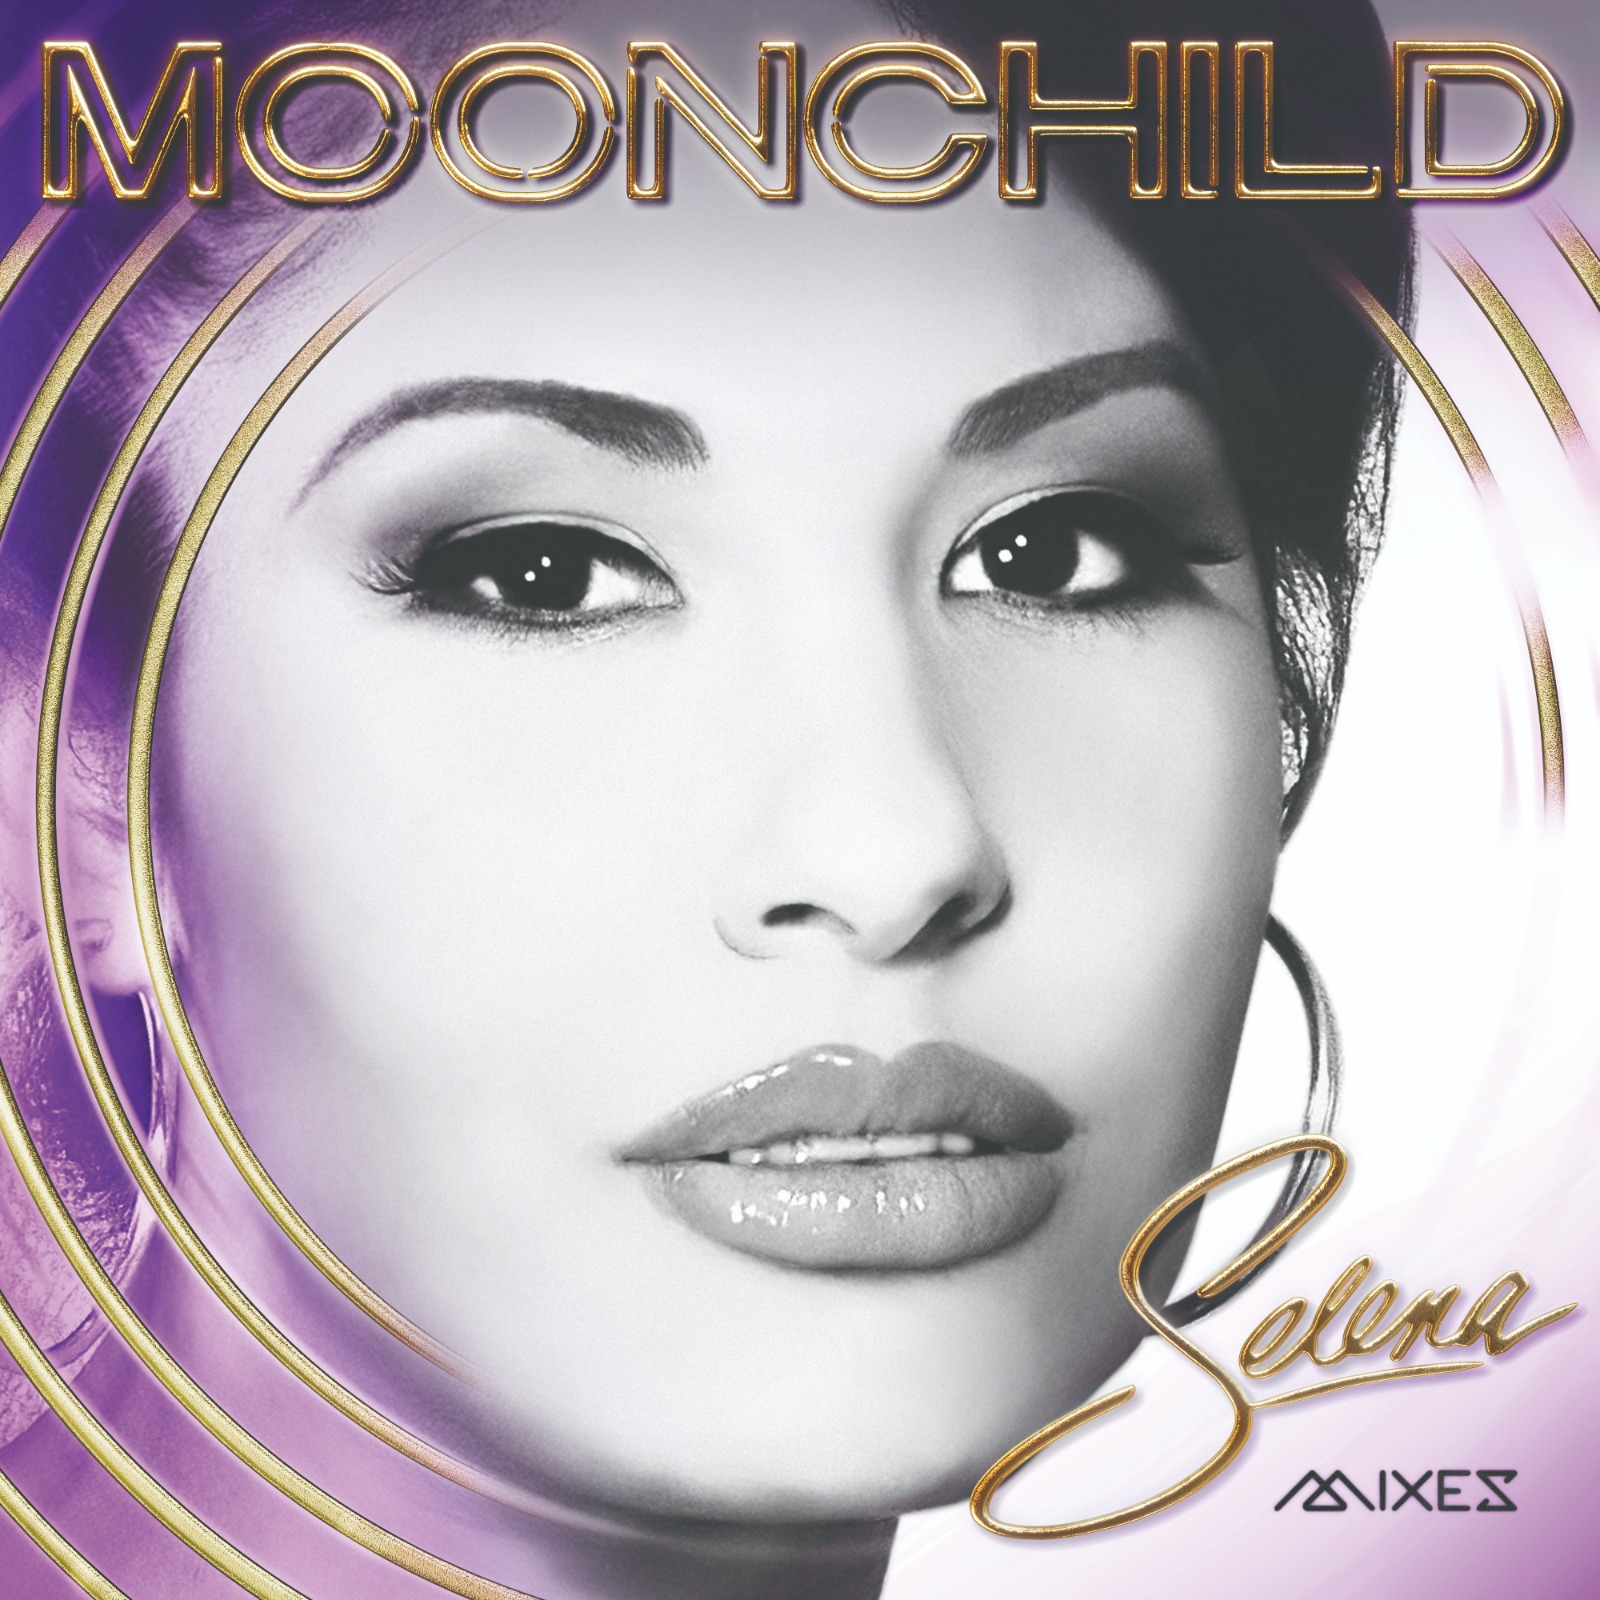 SELENA lanza nuevo álbum “Moonchild Mixes”